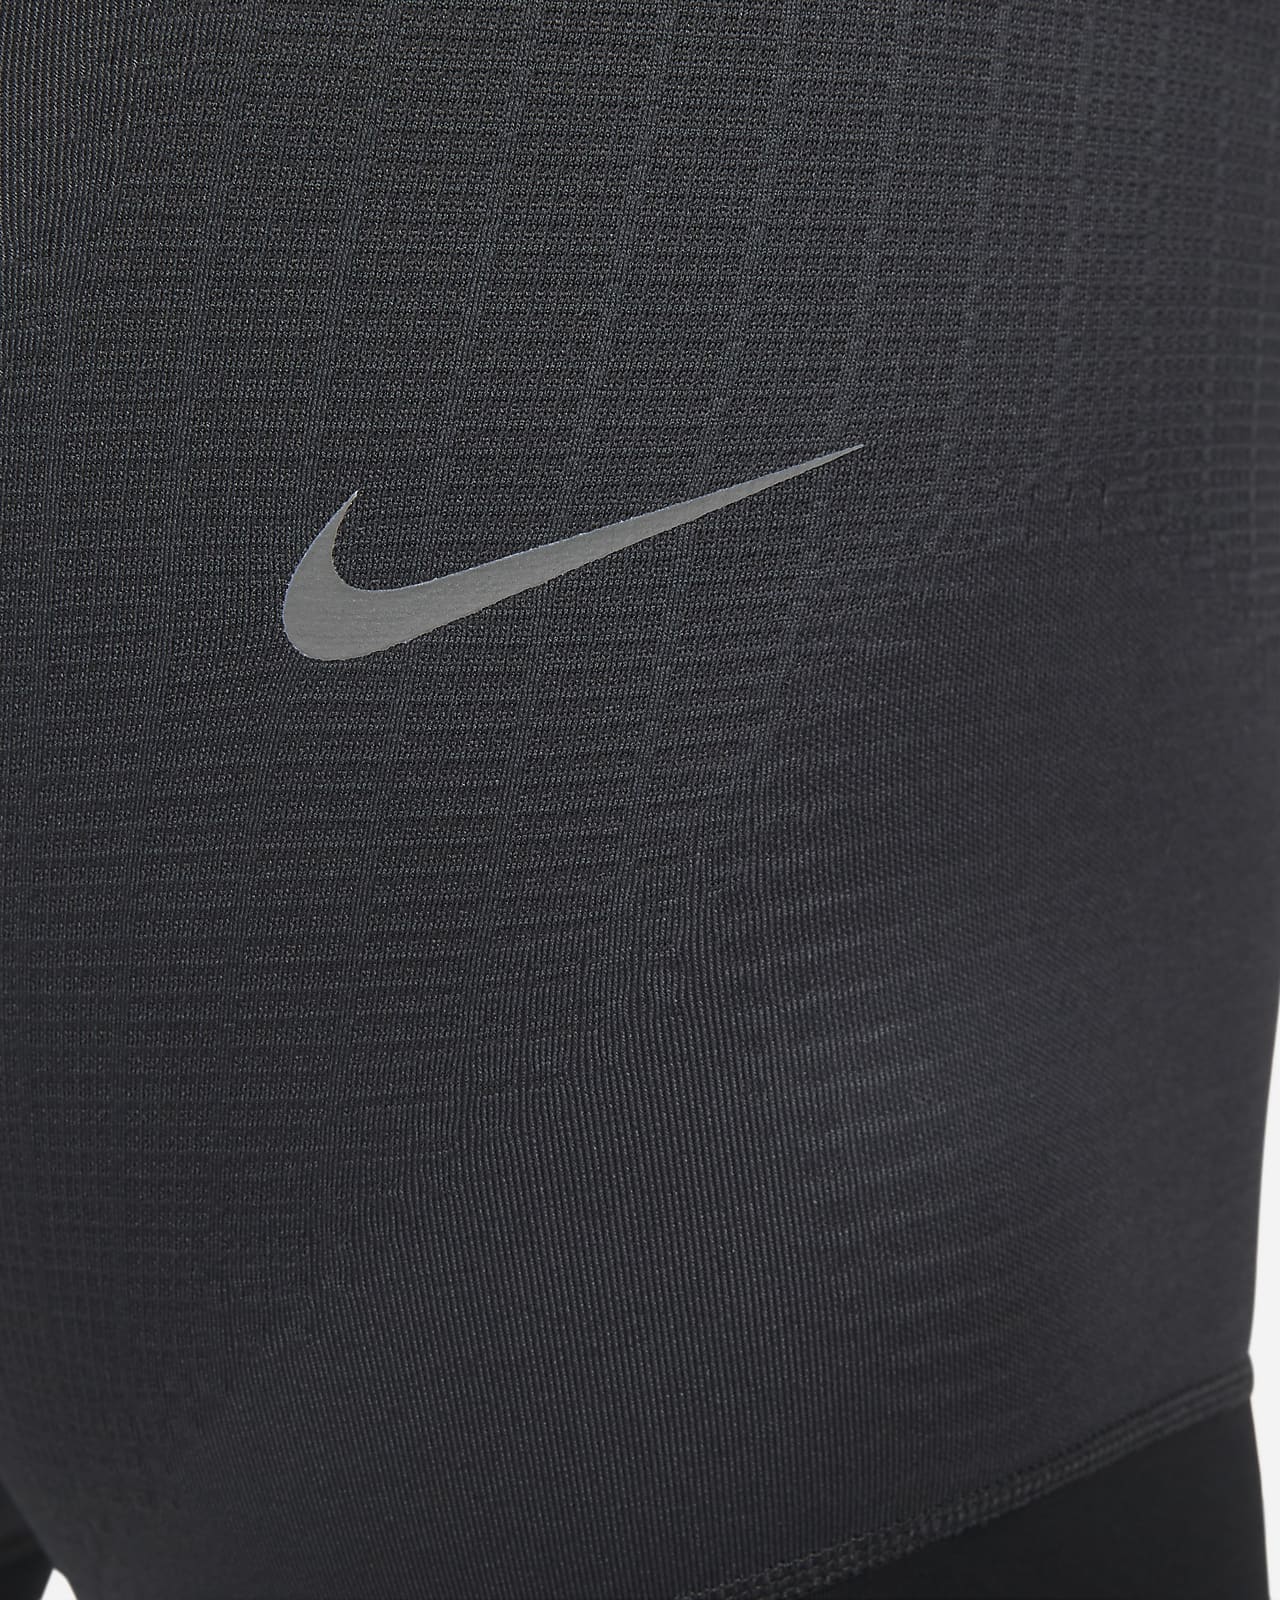 Nike Mens Pro Dri-FIT Therma Tights - Grey 